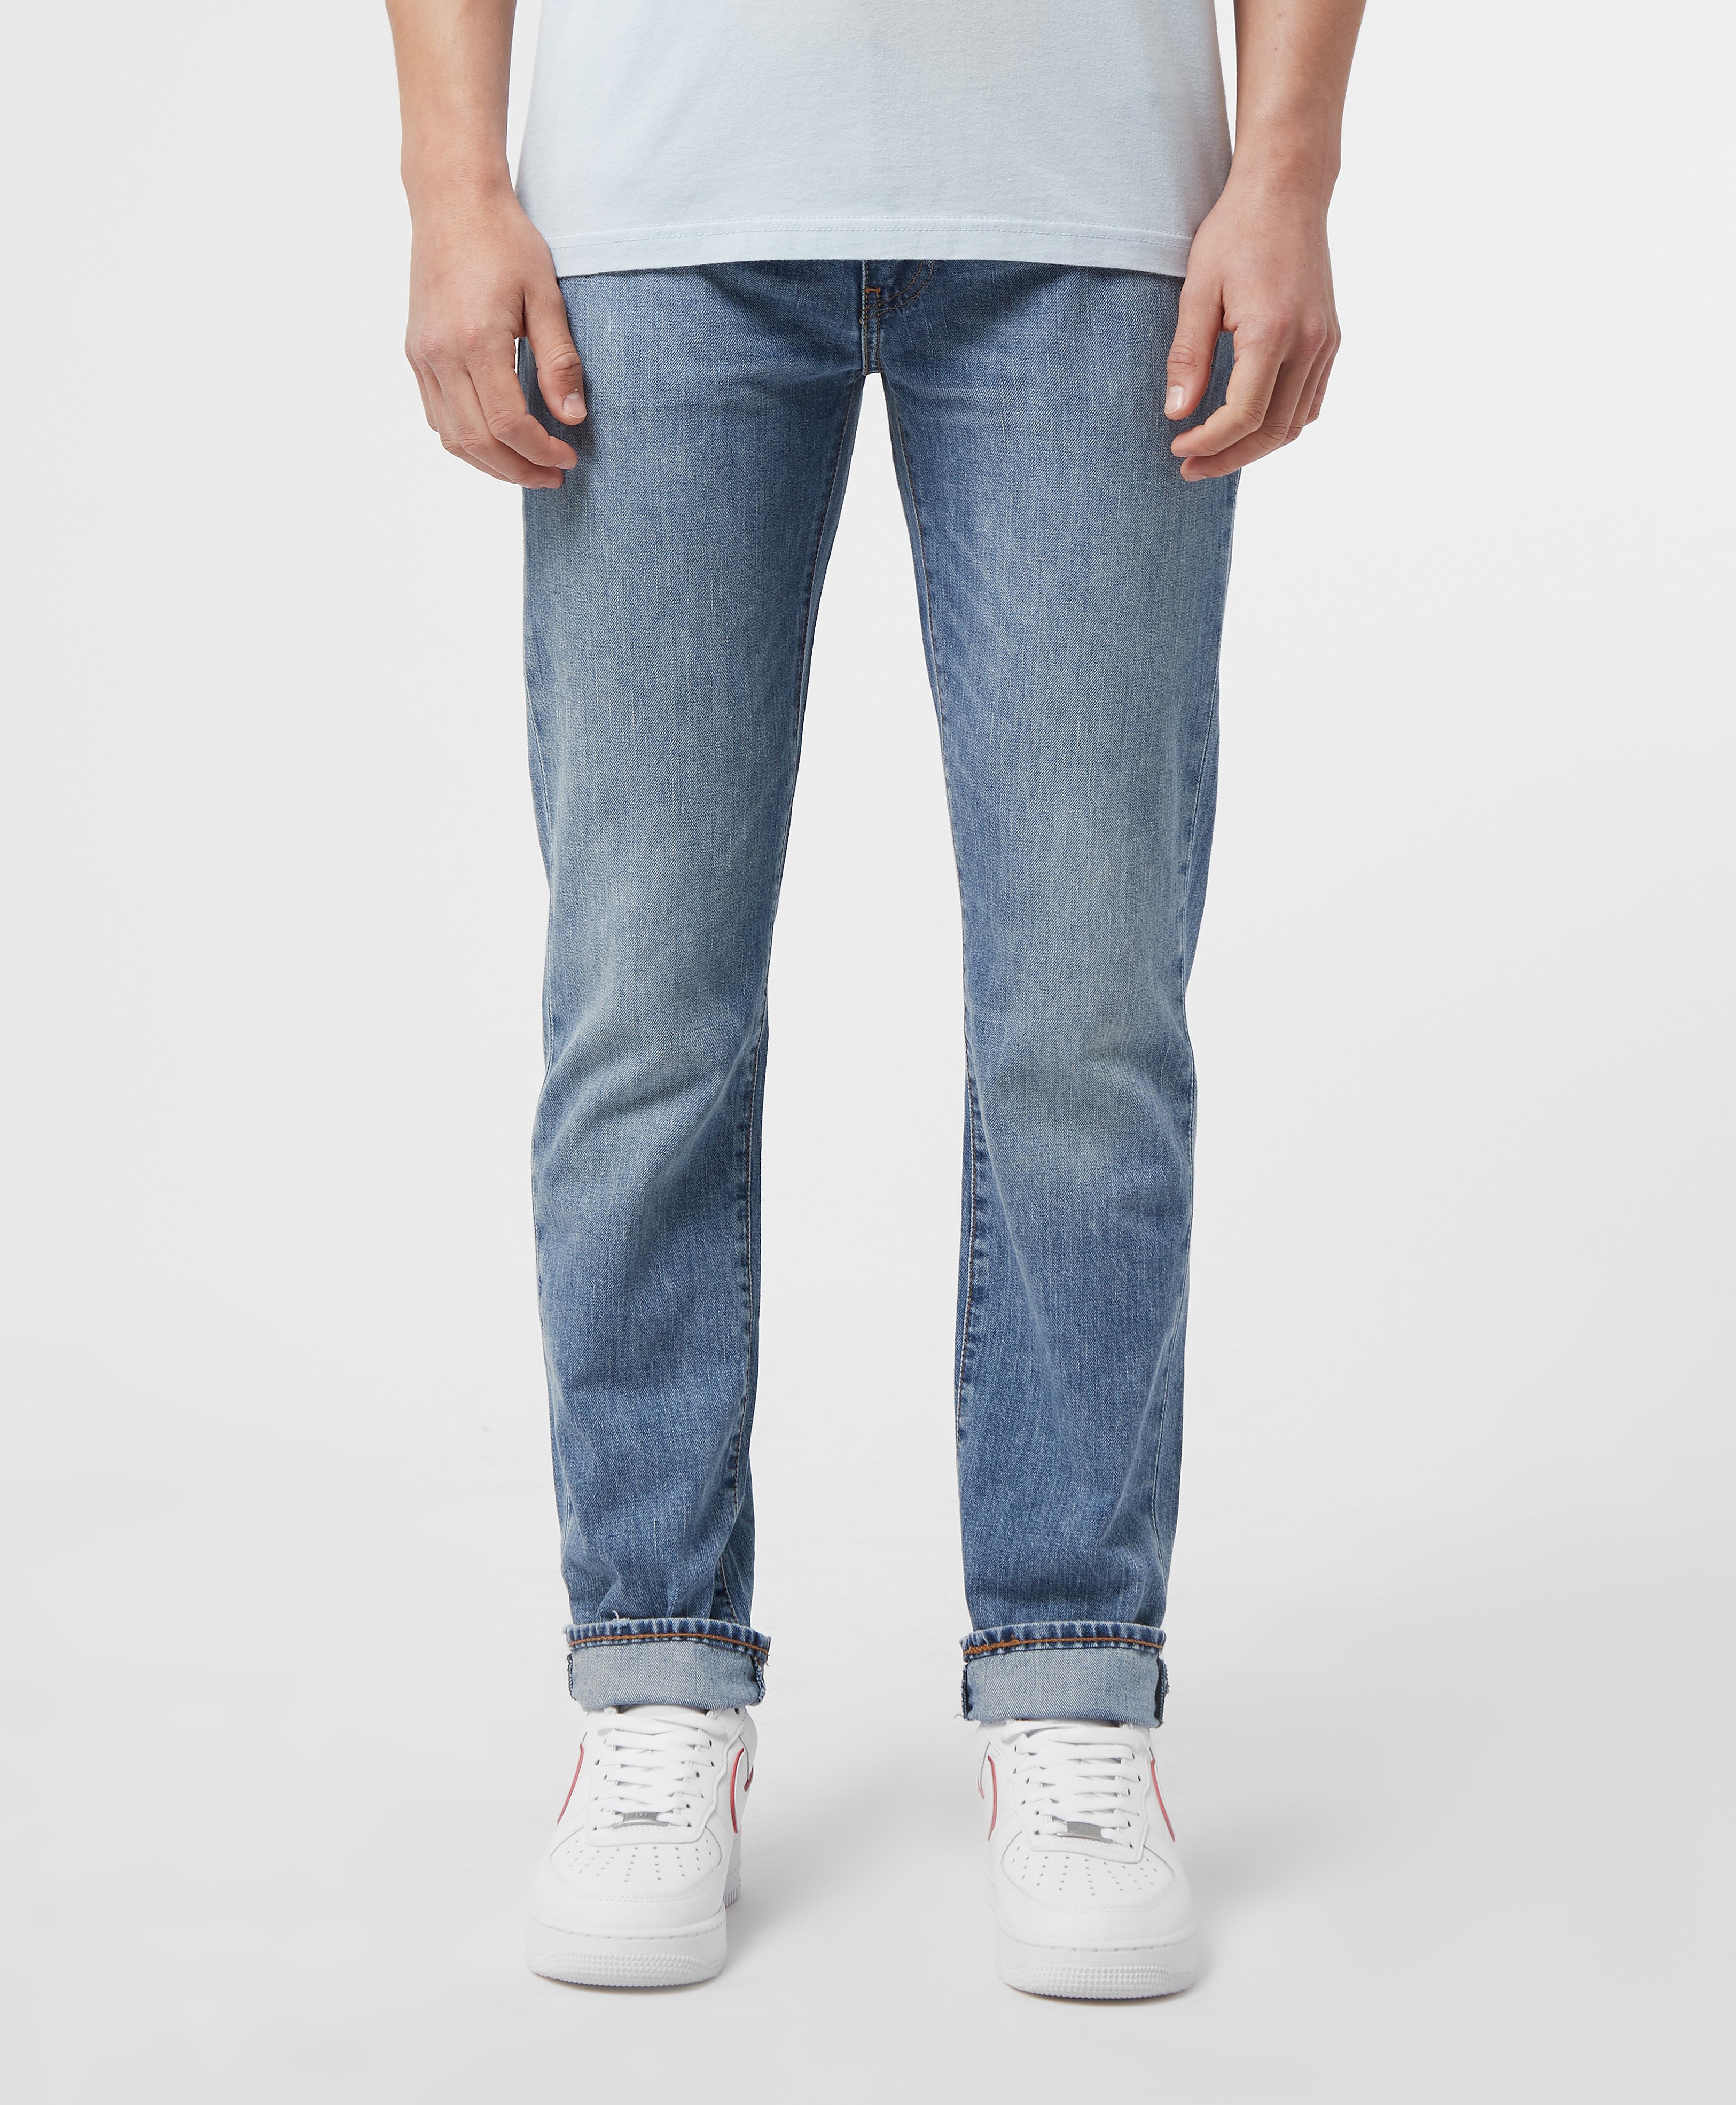 Men's Levis 511 Slim Fit Jeans - Blue, Blue